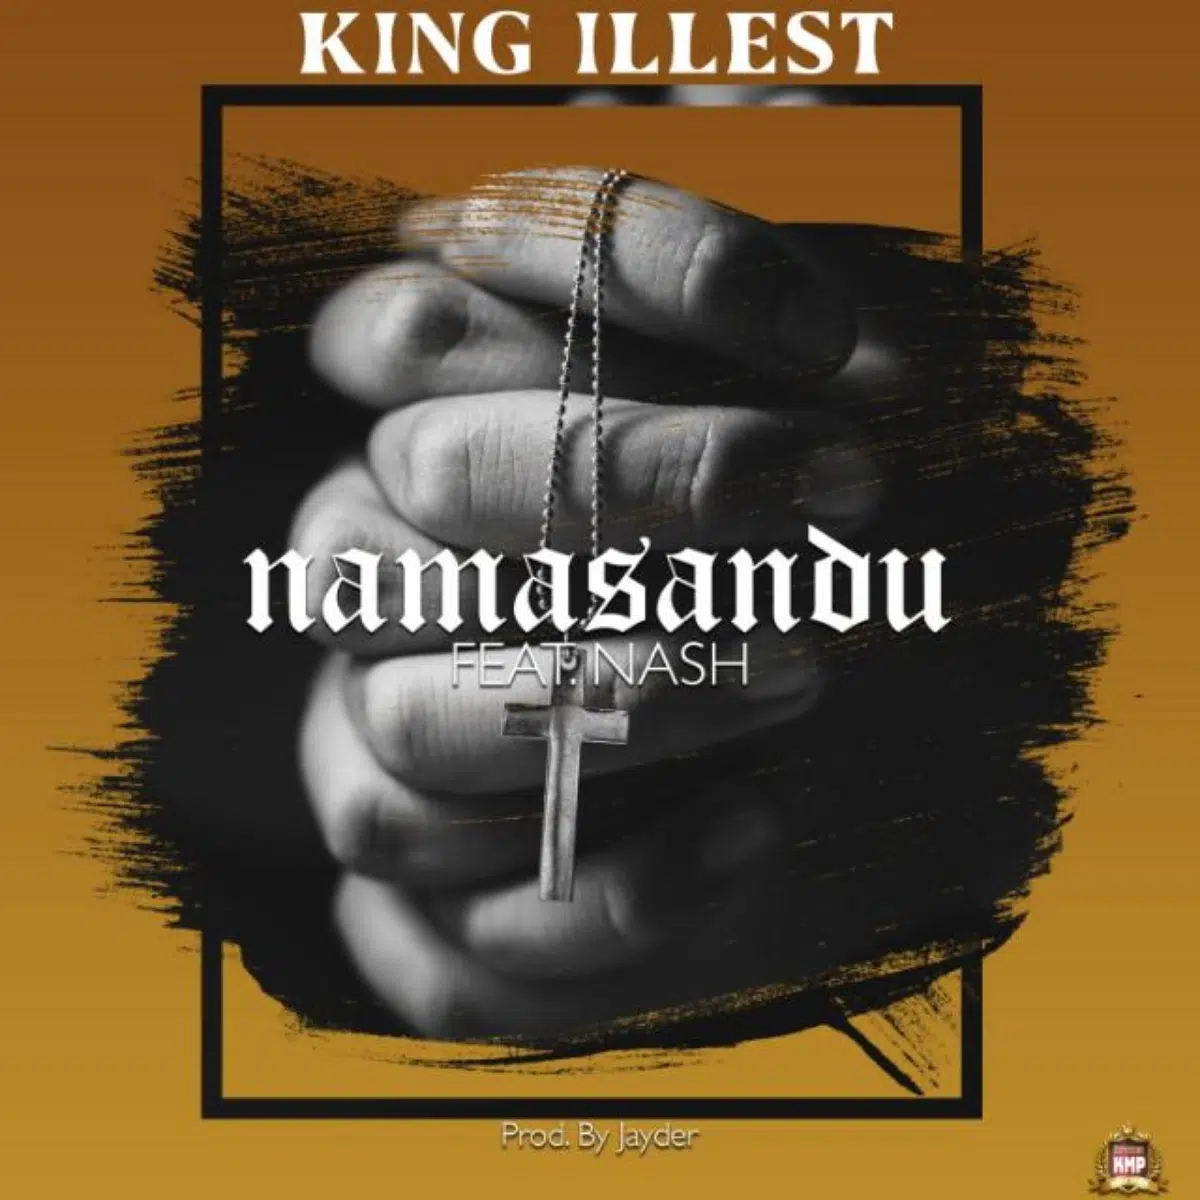 DOWNLOAD: King Illest Ft Nash – “Namasandu” Mp3